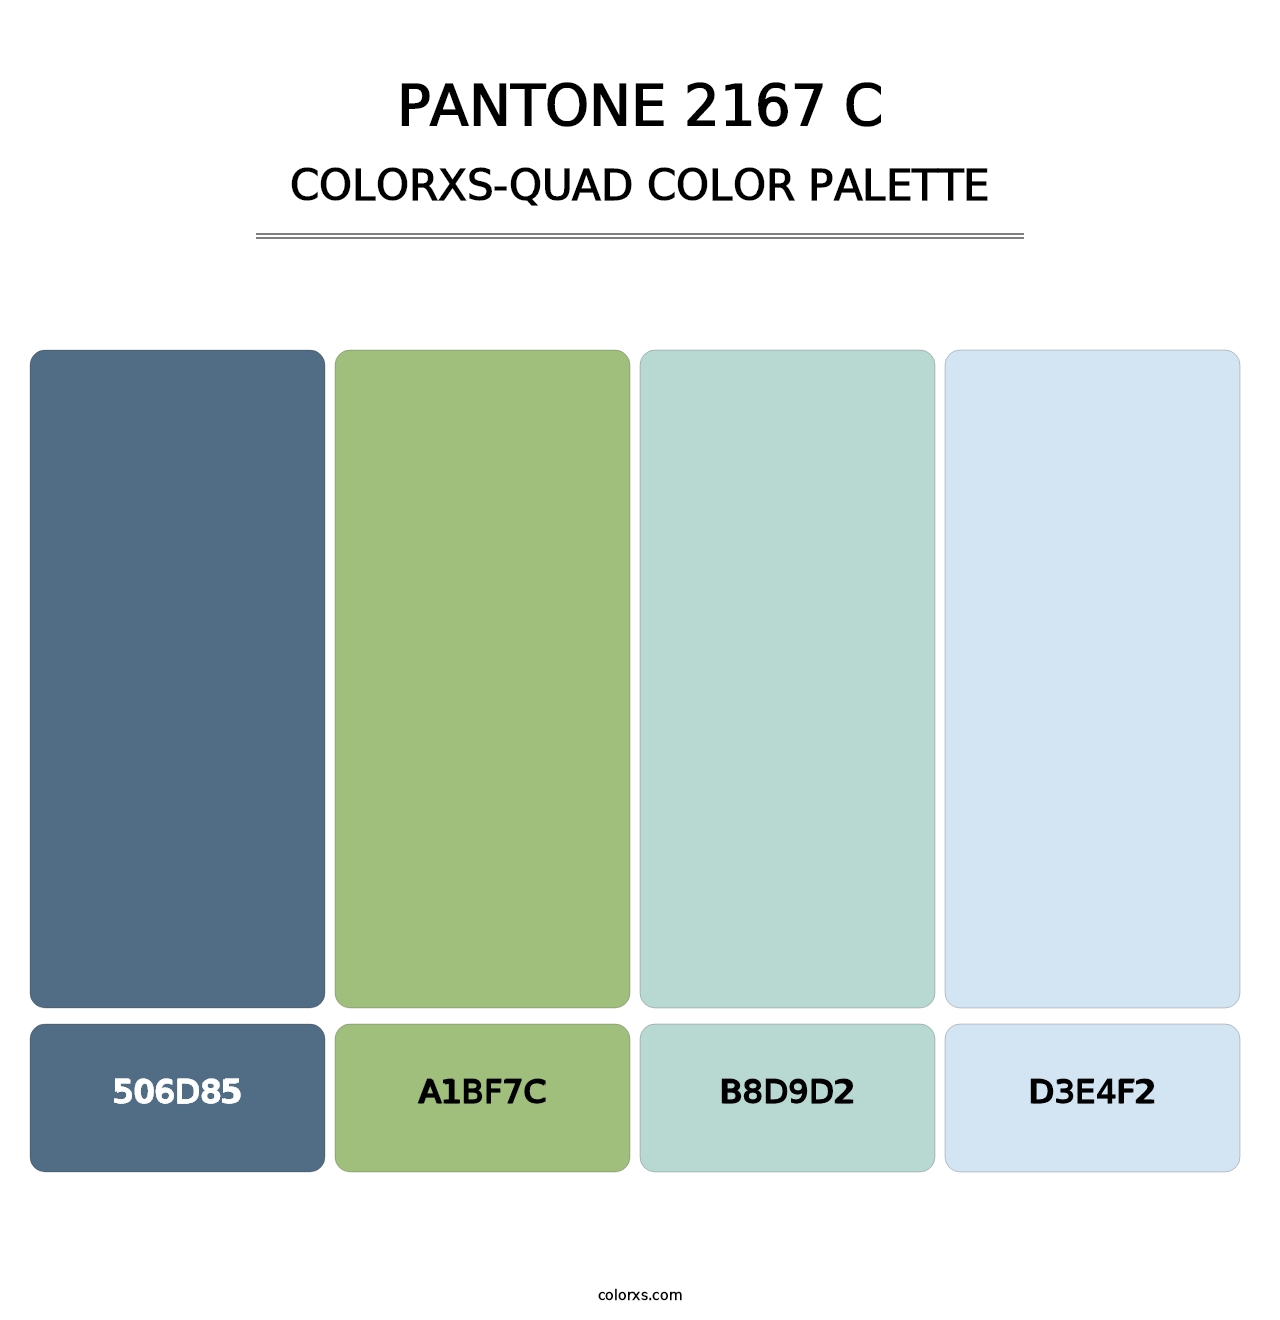 PANTONE 2167 C - Colorxs Quad Palette